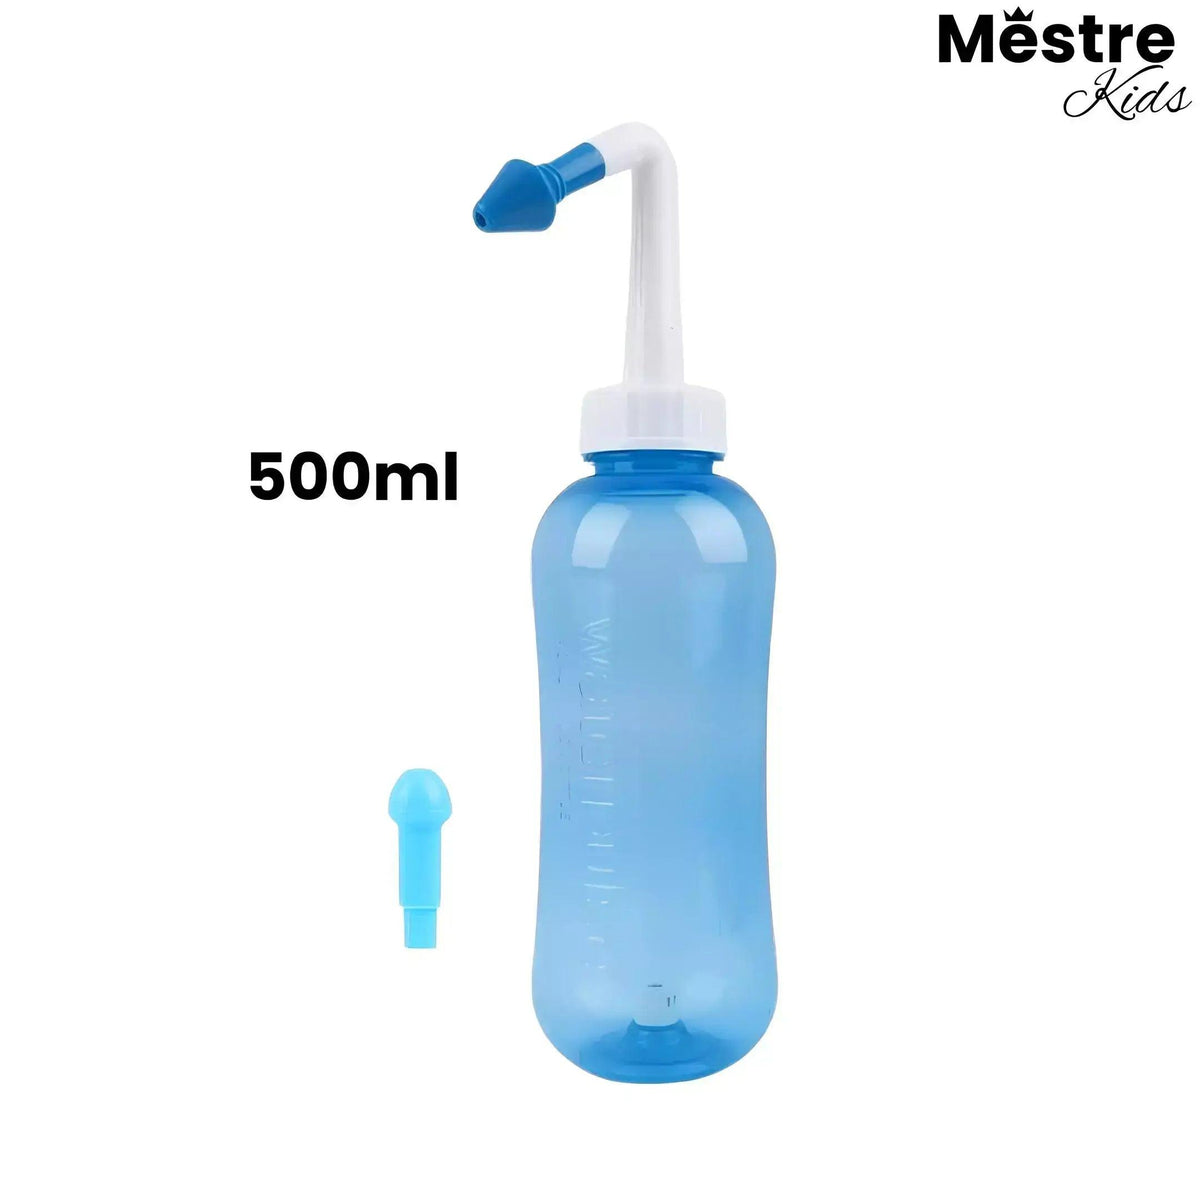 Limpador Nasal Mestre Kids® - Eficiente irrigação e lavagem - Mestre Kids